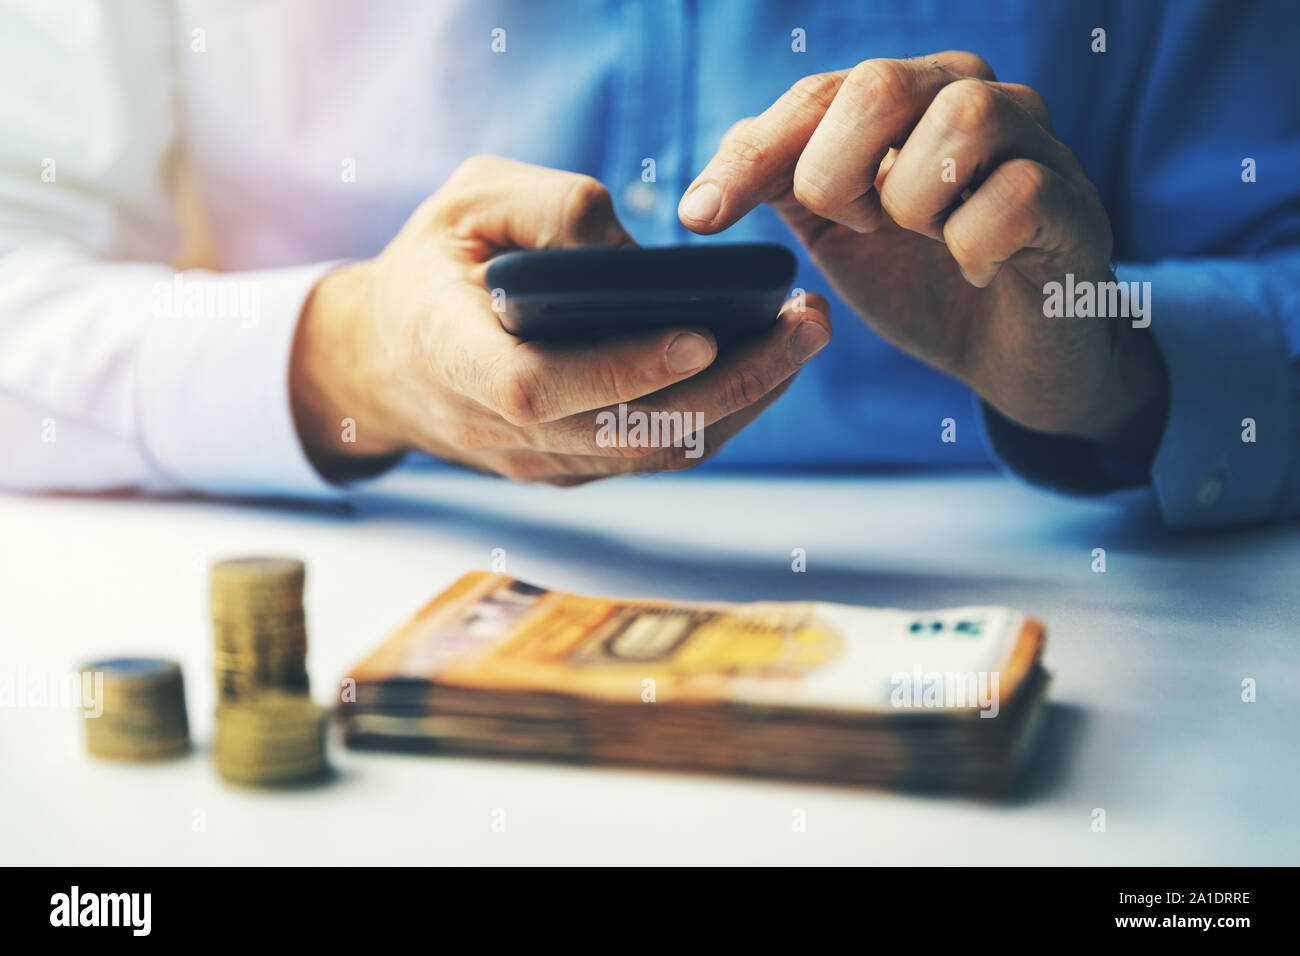 Concept - portrait fintech téléphone intelligent pour faire des transactions financières Banque D'Images